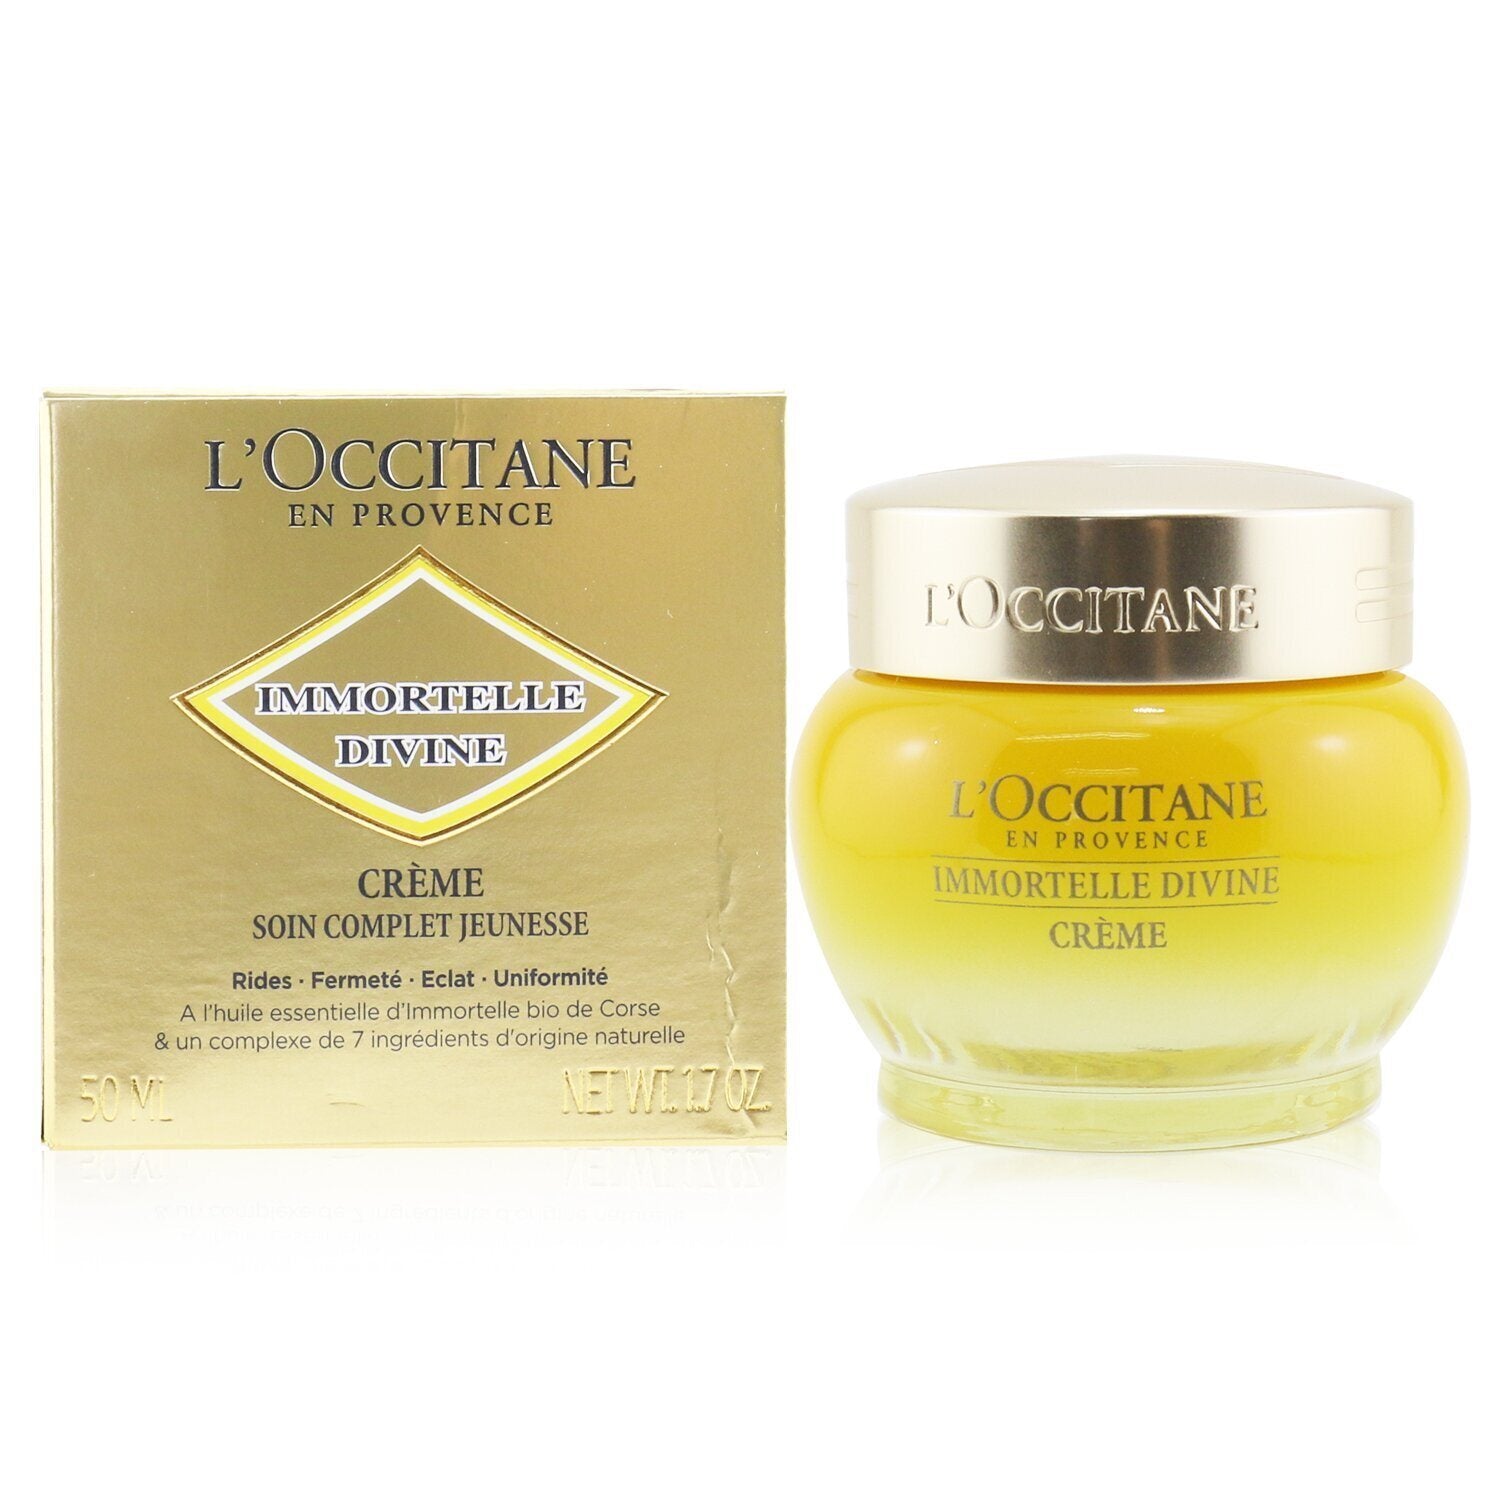 L'OCCITANE - Immortelle Divine Cream - 50ml/1.7oz 3P's Inclusive Beauty